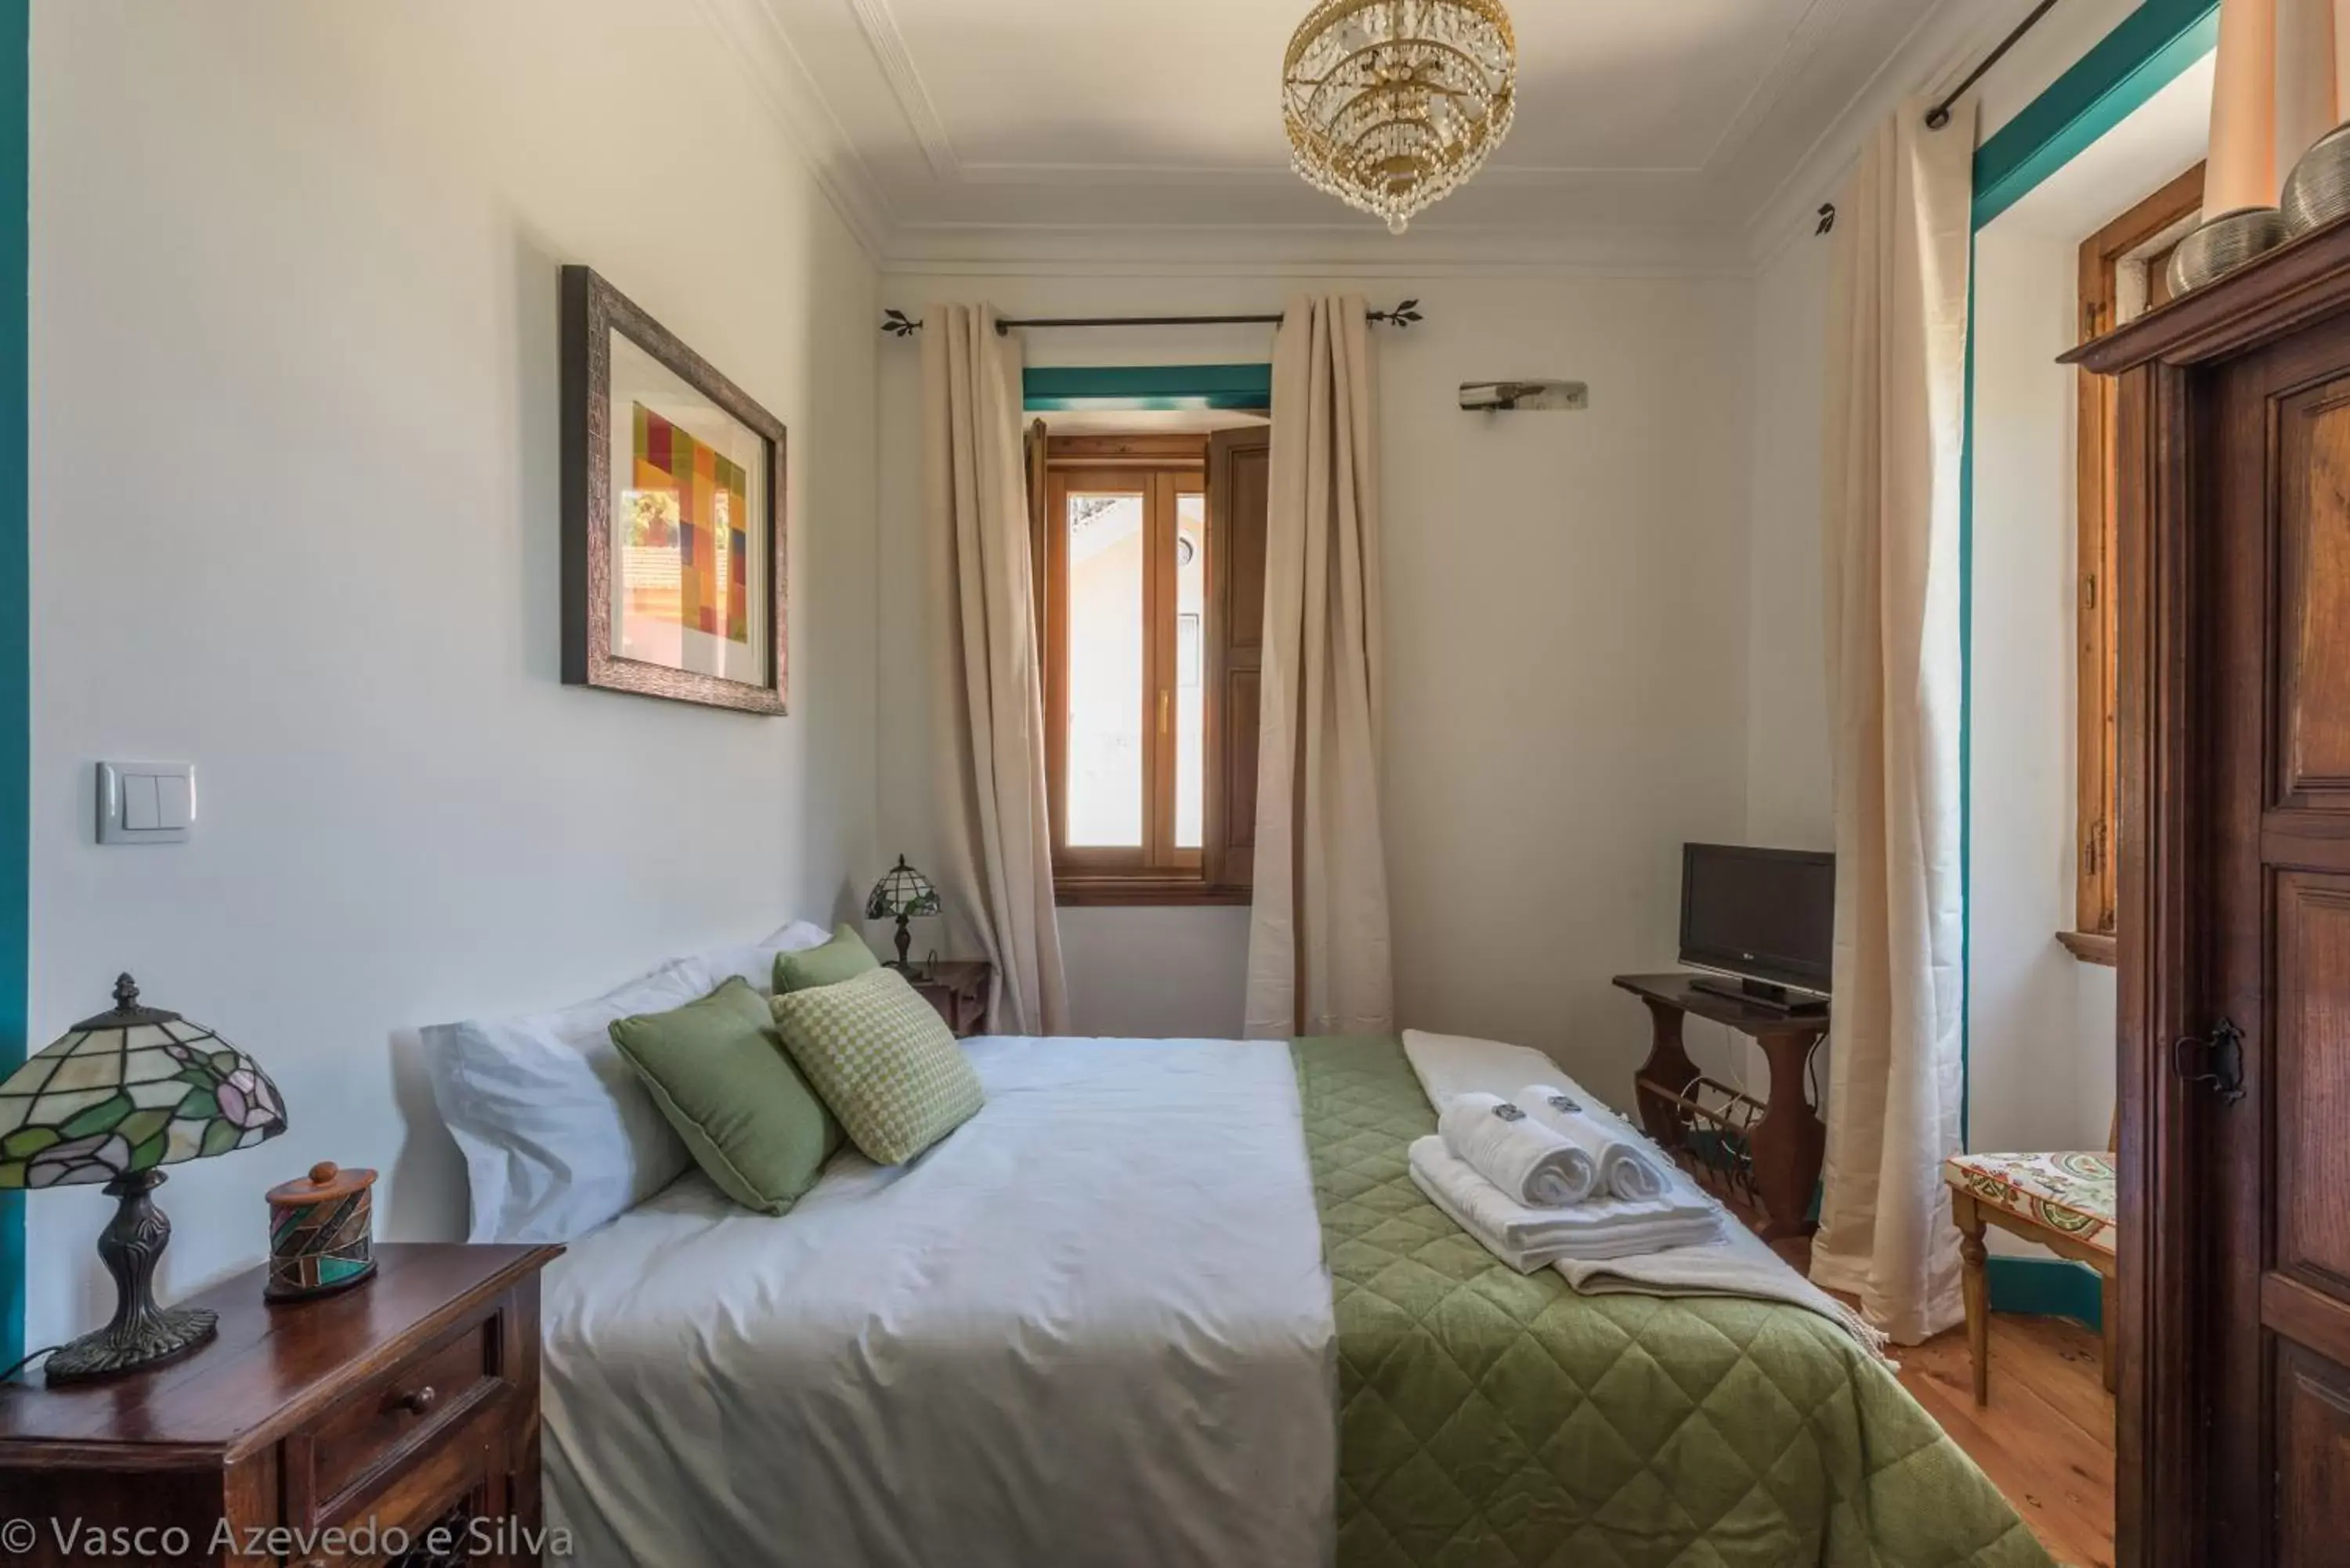 Economy Double Room in Guest House Villa dos Poetas